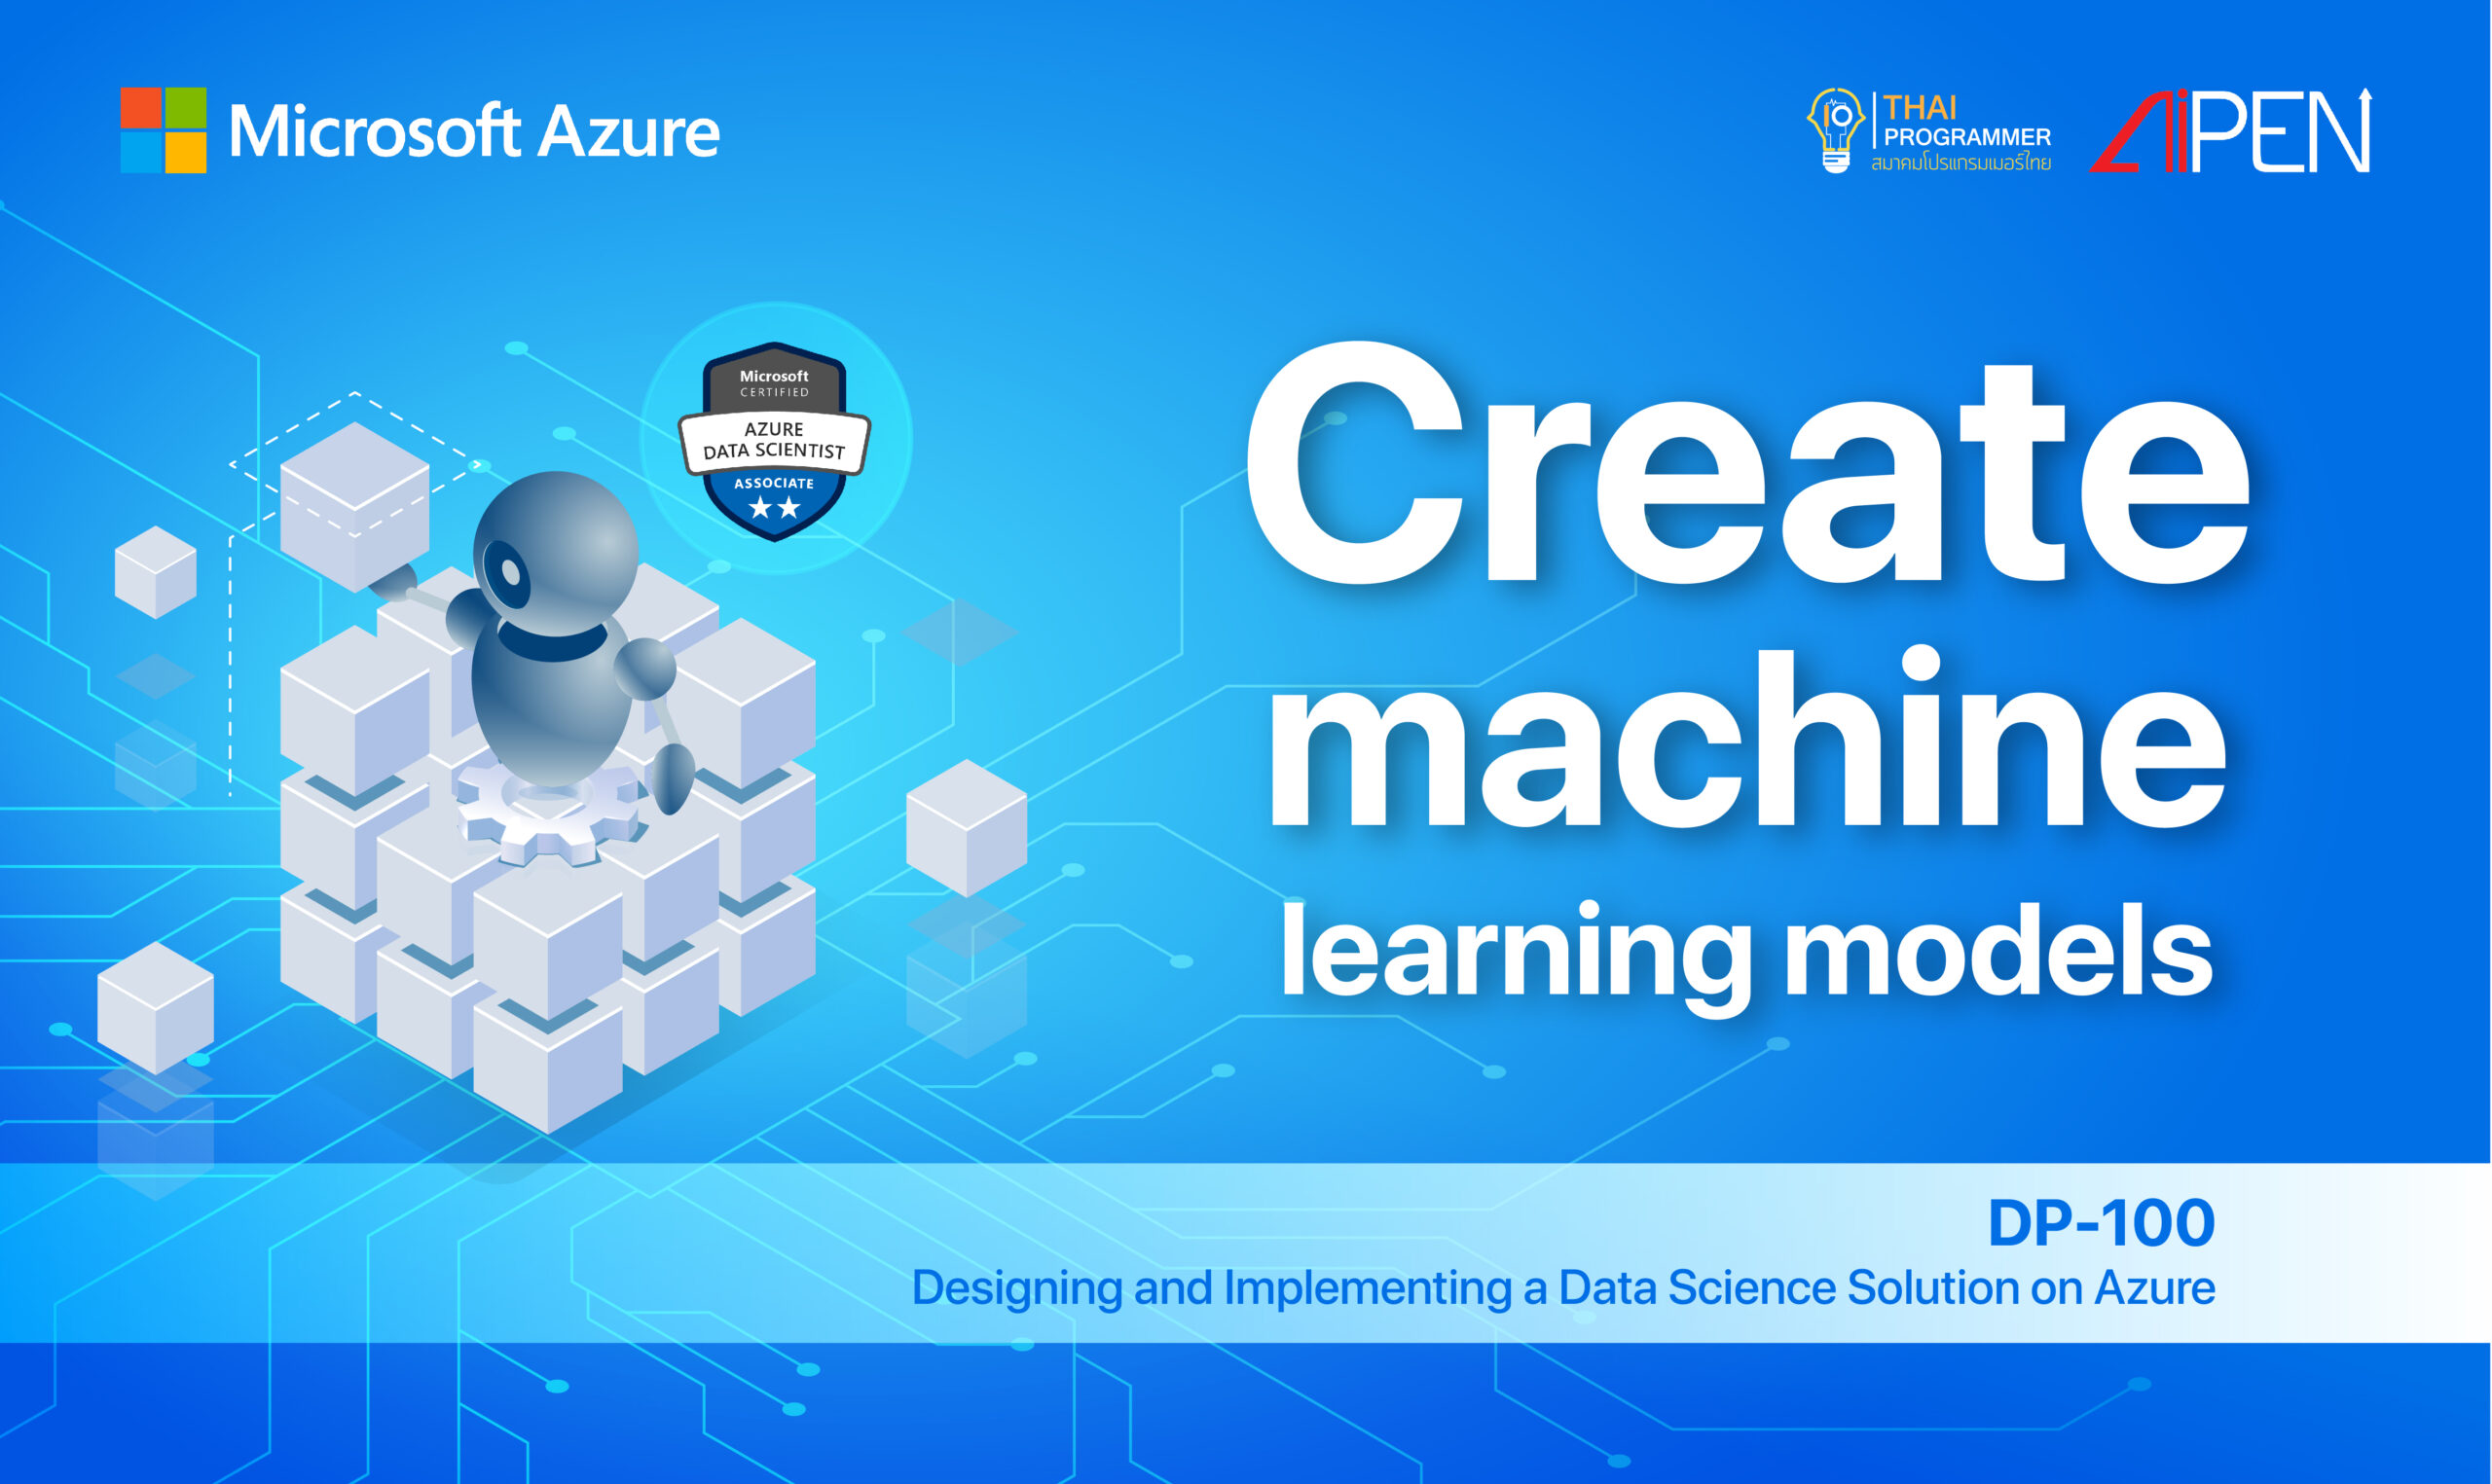 Microsoft Azure : Create machine learning models